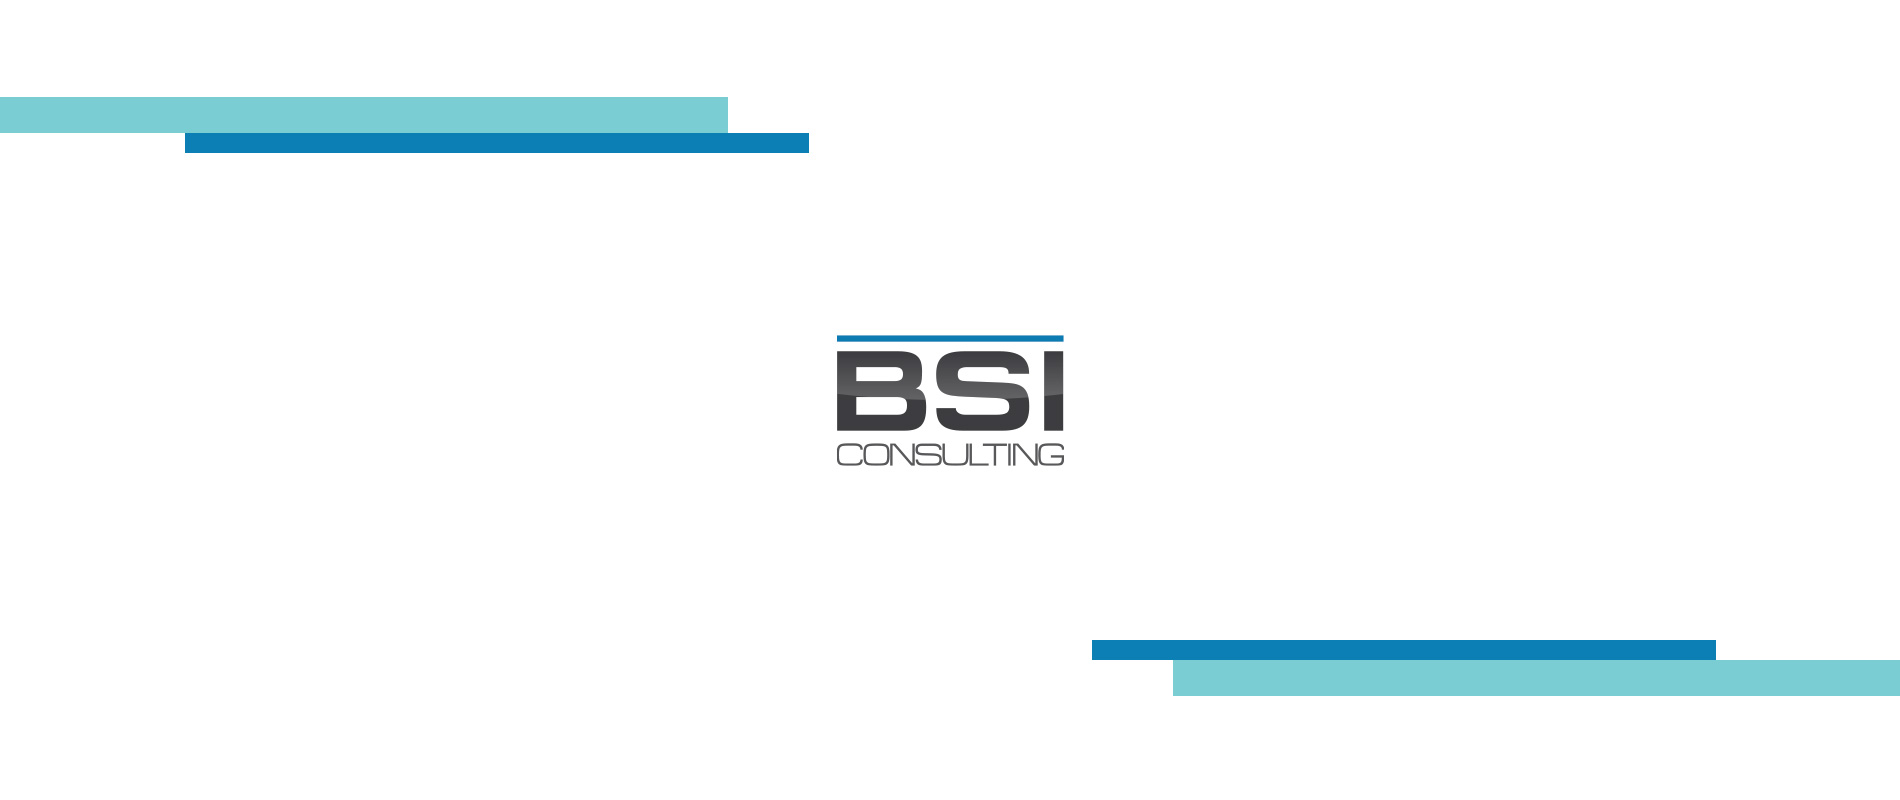 BSI Consulting web site